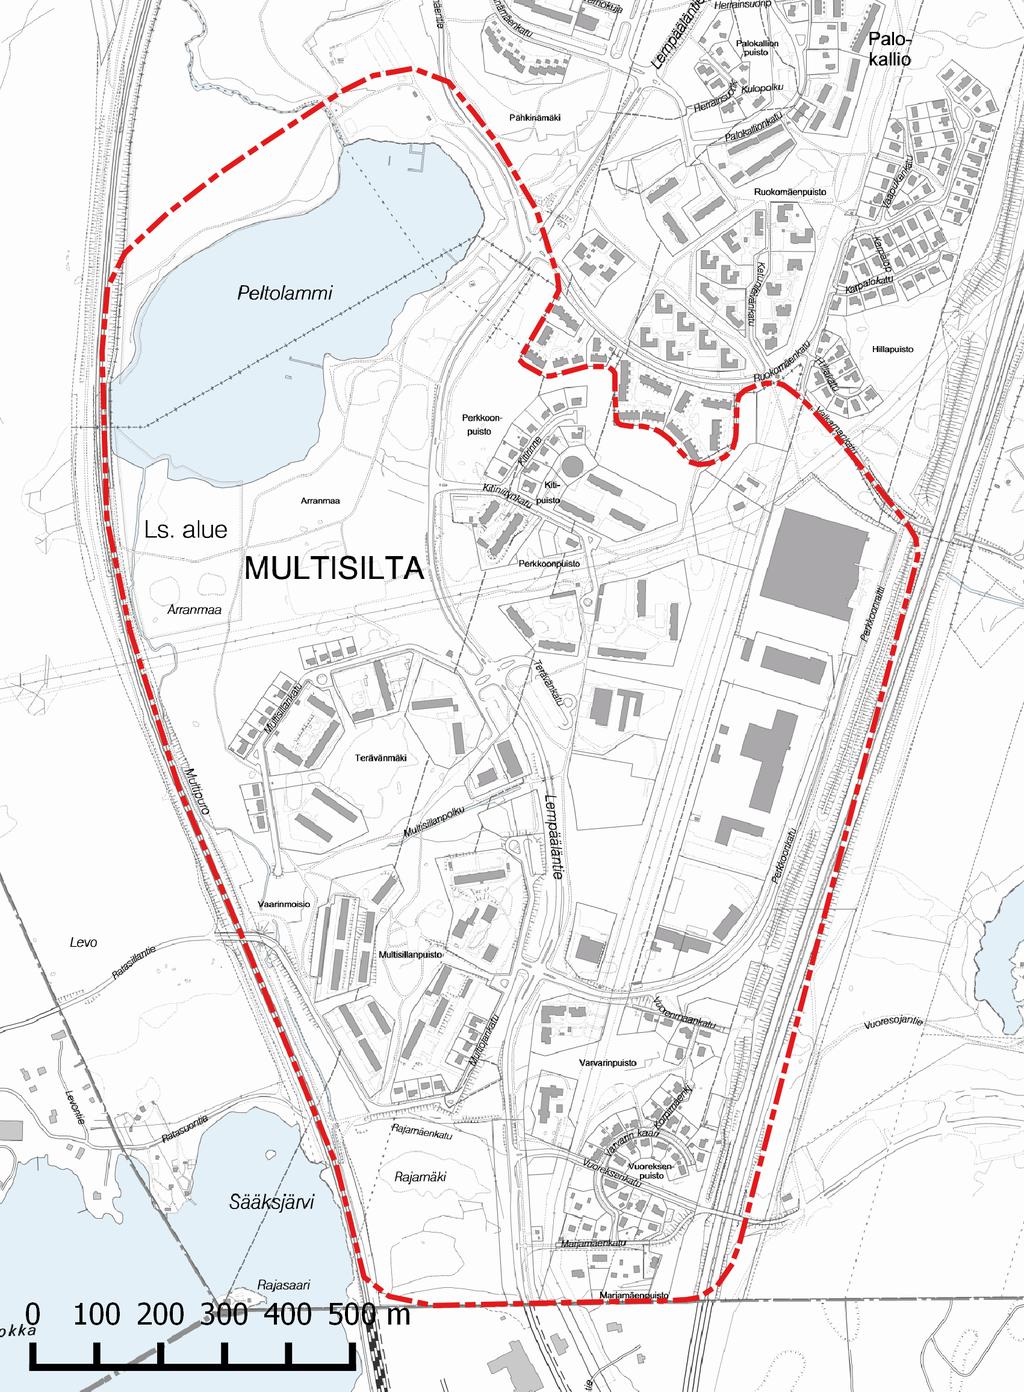 Pohjoisessa alue rajautuu Peltolammin kaupunginosaan, etelässä Tampereen ja Lempäälän rajaan, lännessä Tampere-Helsinki -päärataan ja idässä Tampere-Helsinki -moottoritiehen (VT 3, VT 9).